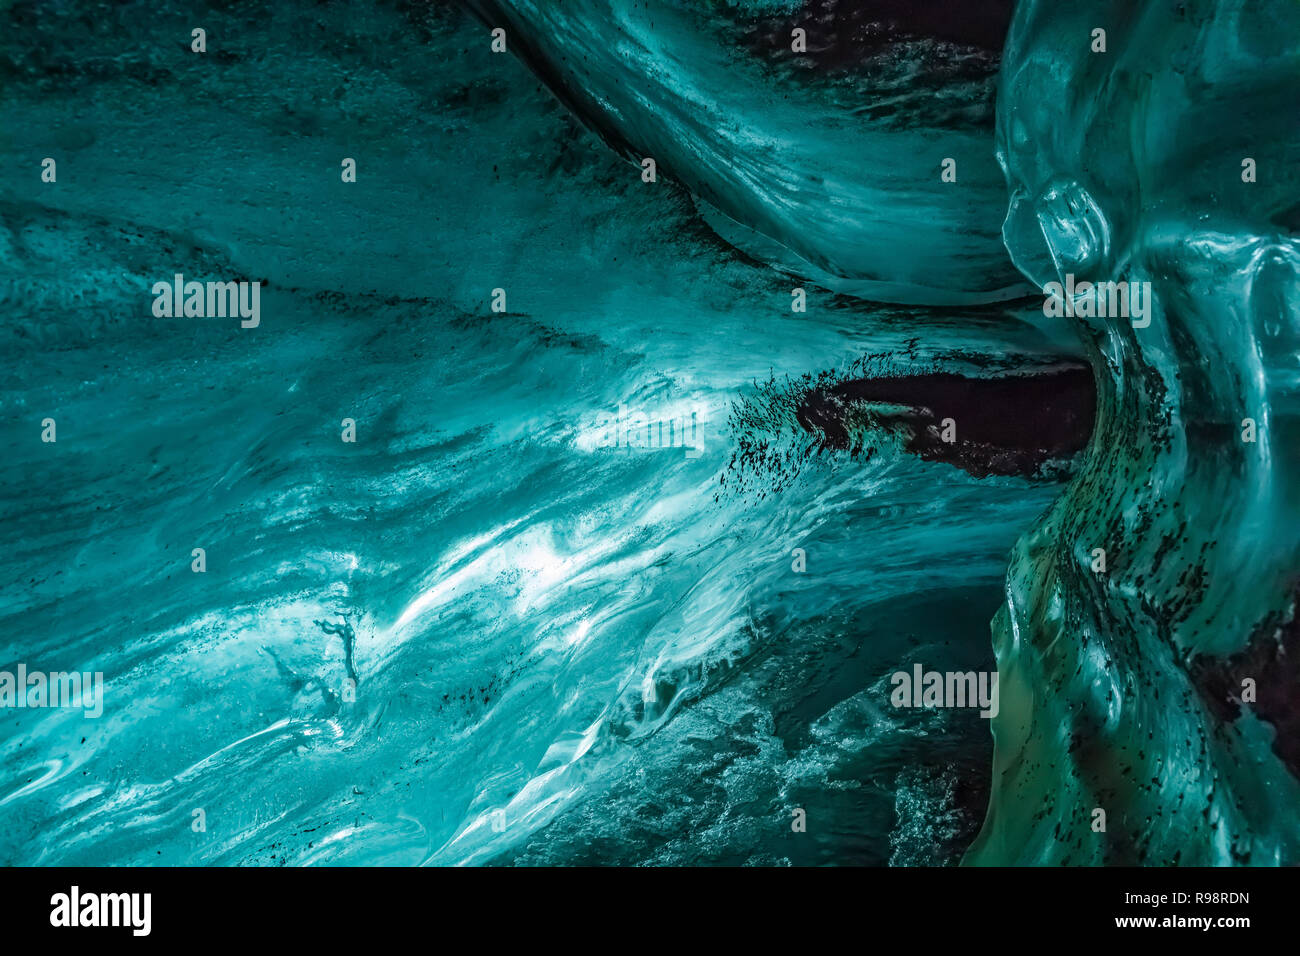 Interno di una caverna di ghiaccio all'interno di un lobo del ghiacciaio Mýrdalsjökull, che siede in cima al vulcano Katla, in inverno in Islanda Foto Stock